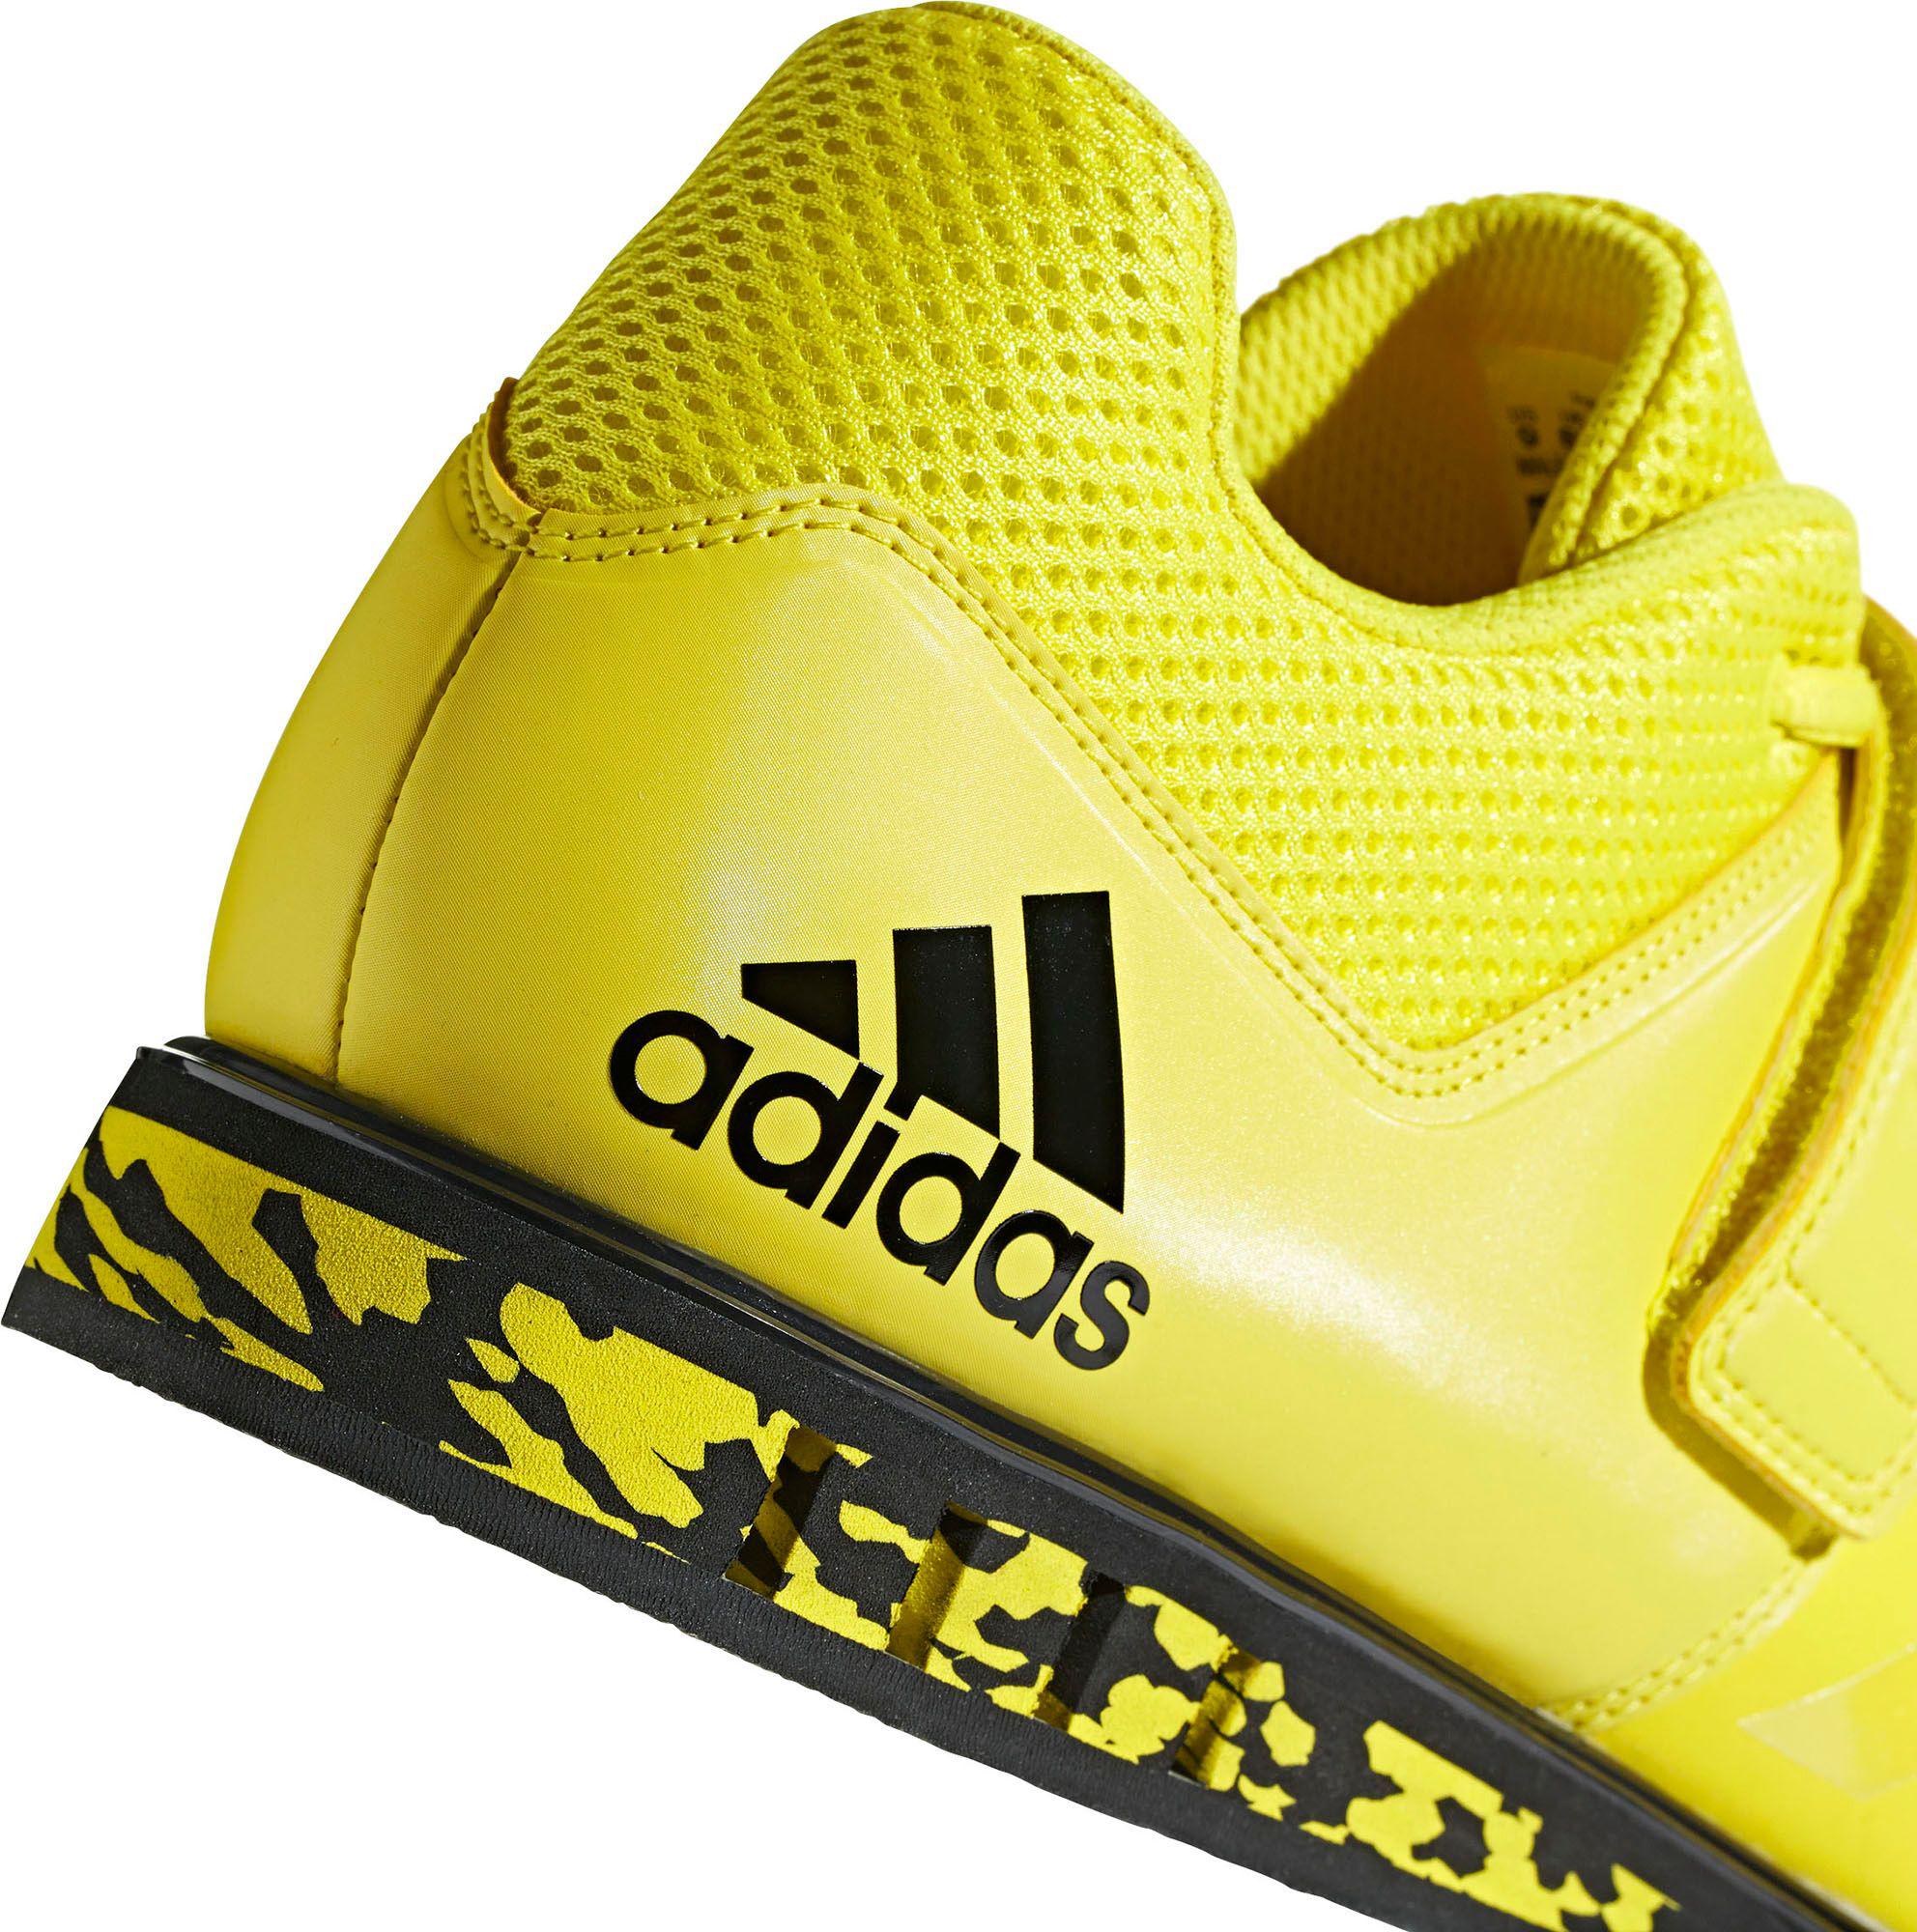 adidas powerlift 3.1 yellow